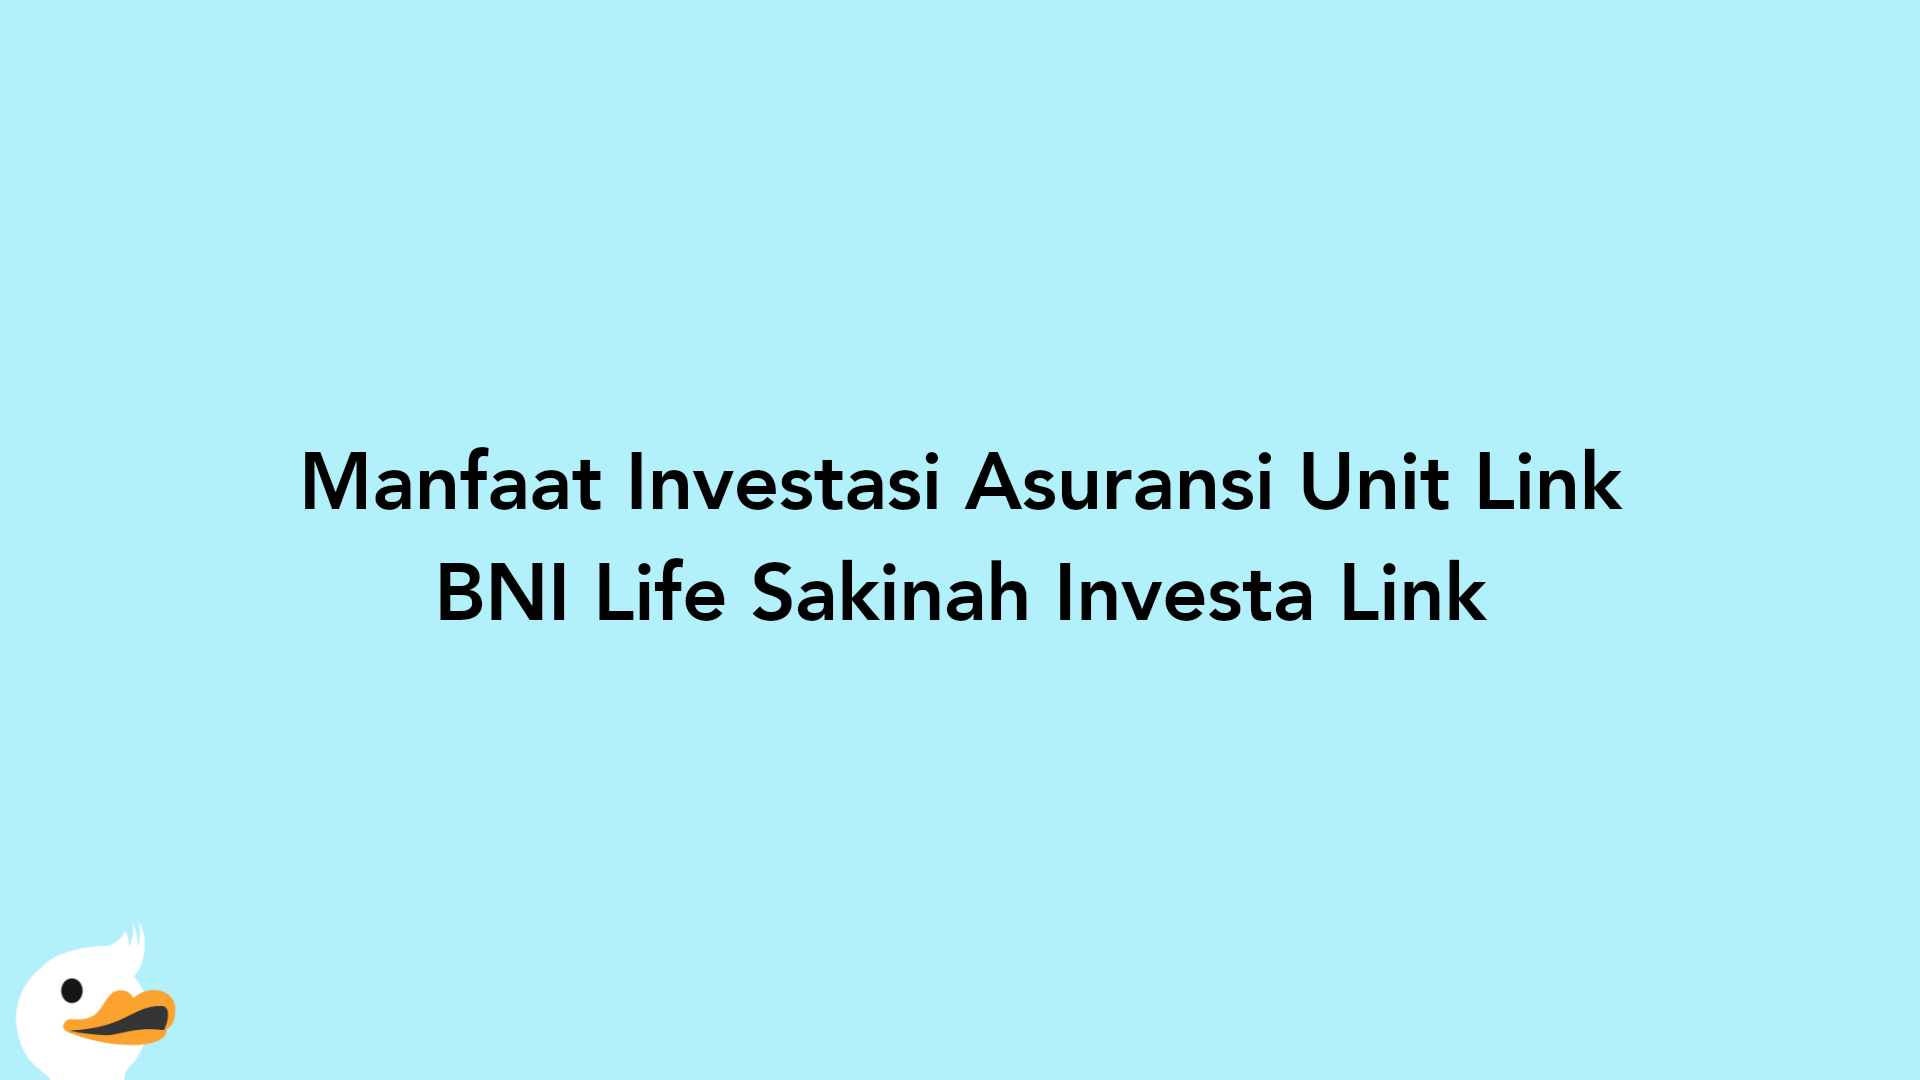 Manfaat Investasi Asuransi Unit Link BNI Life Sakinah Investa Link